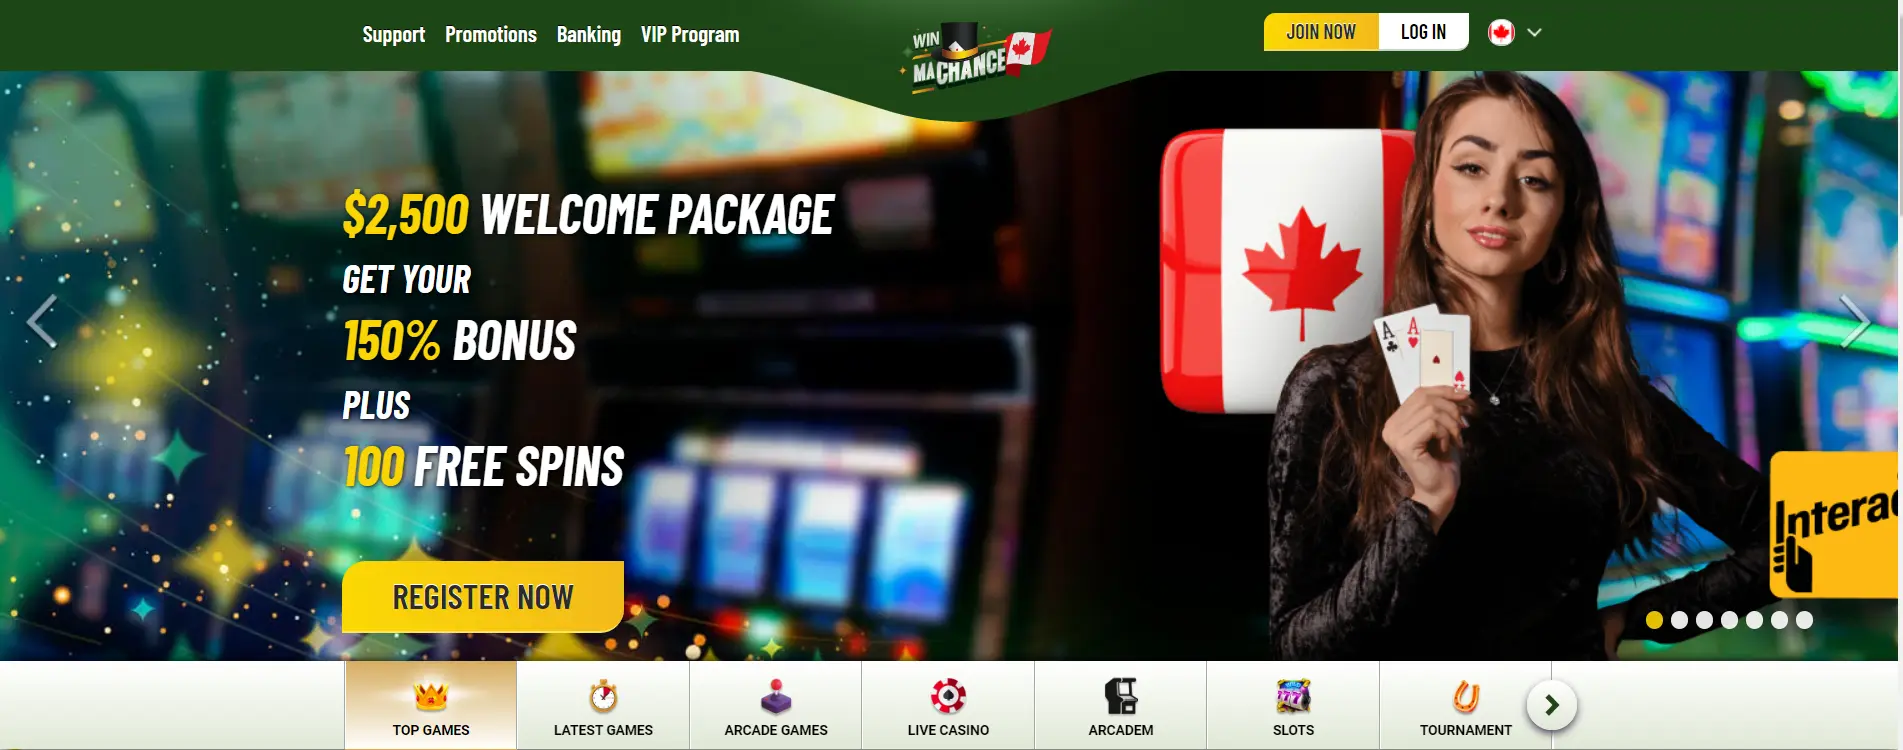 Screenshot of MaChance Online Casino Welcome Bonus